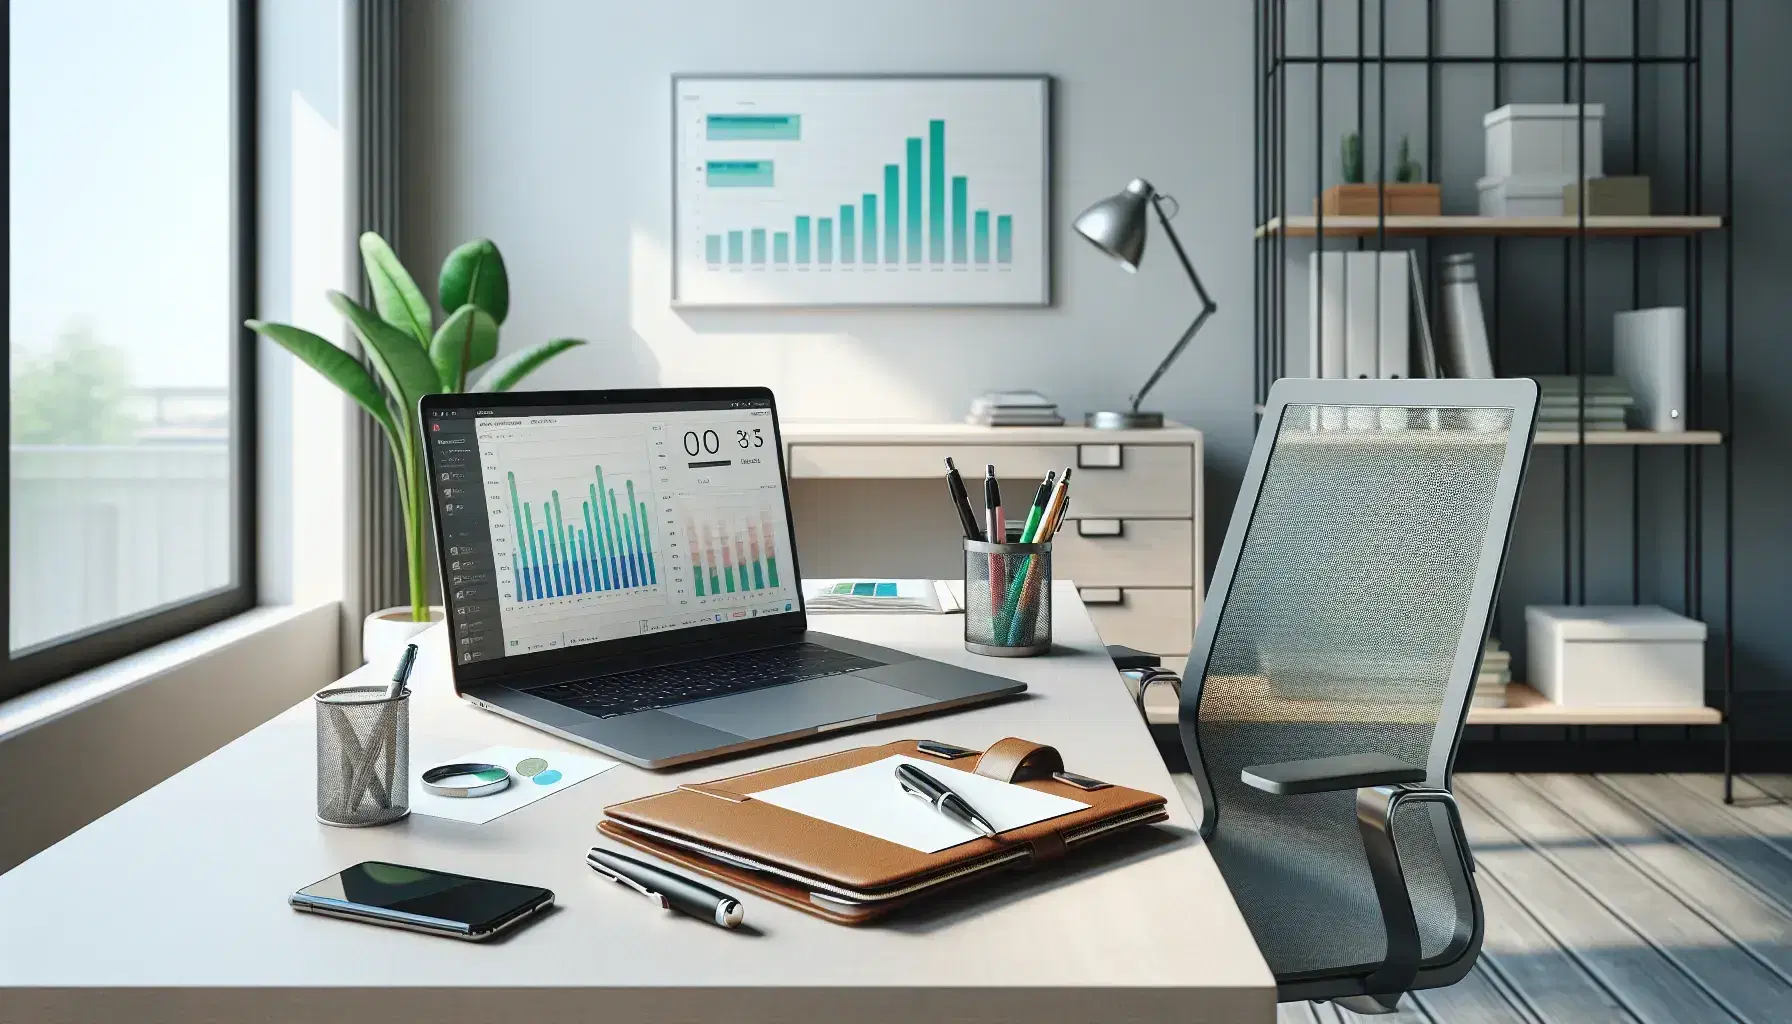 Oficina moderna y luminosa con mesa de trabajo, portafolio de cuero, bolígrafo, smartphone, silla ergonómica y planta verde, sin textos visibles.